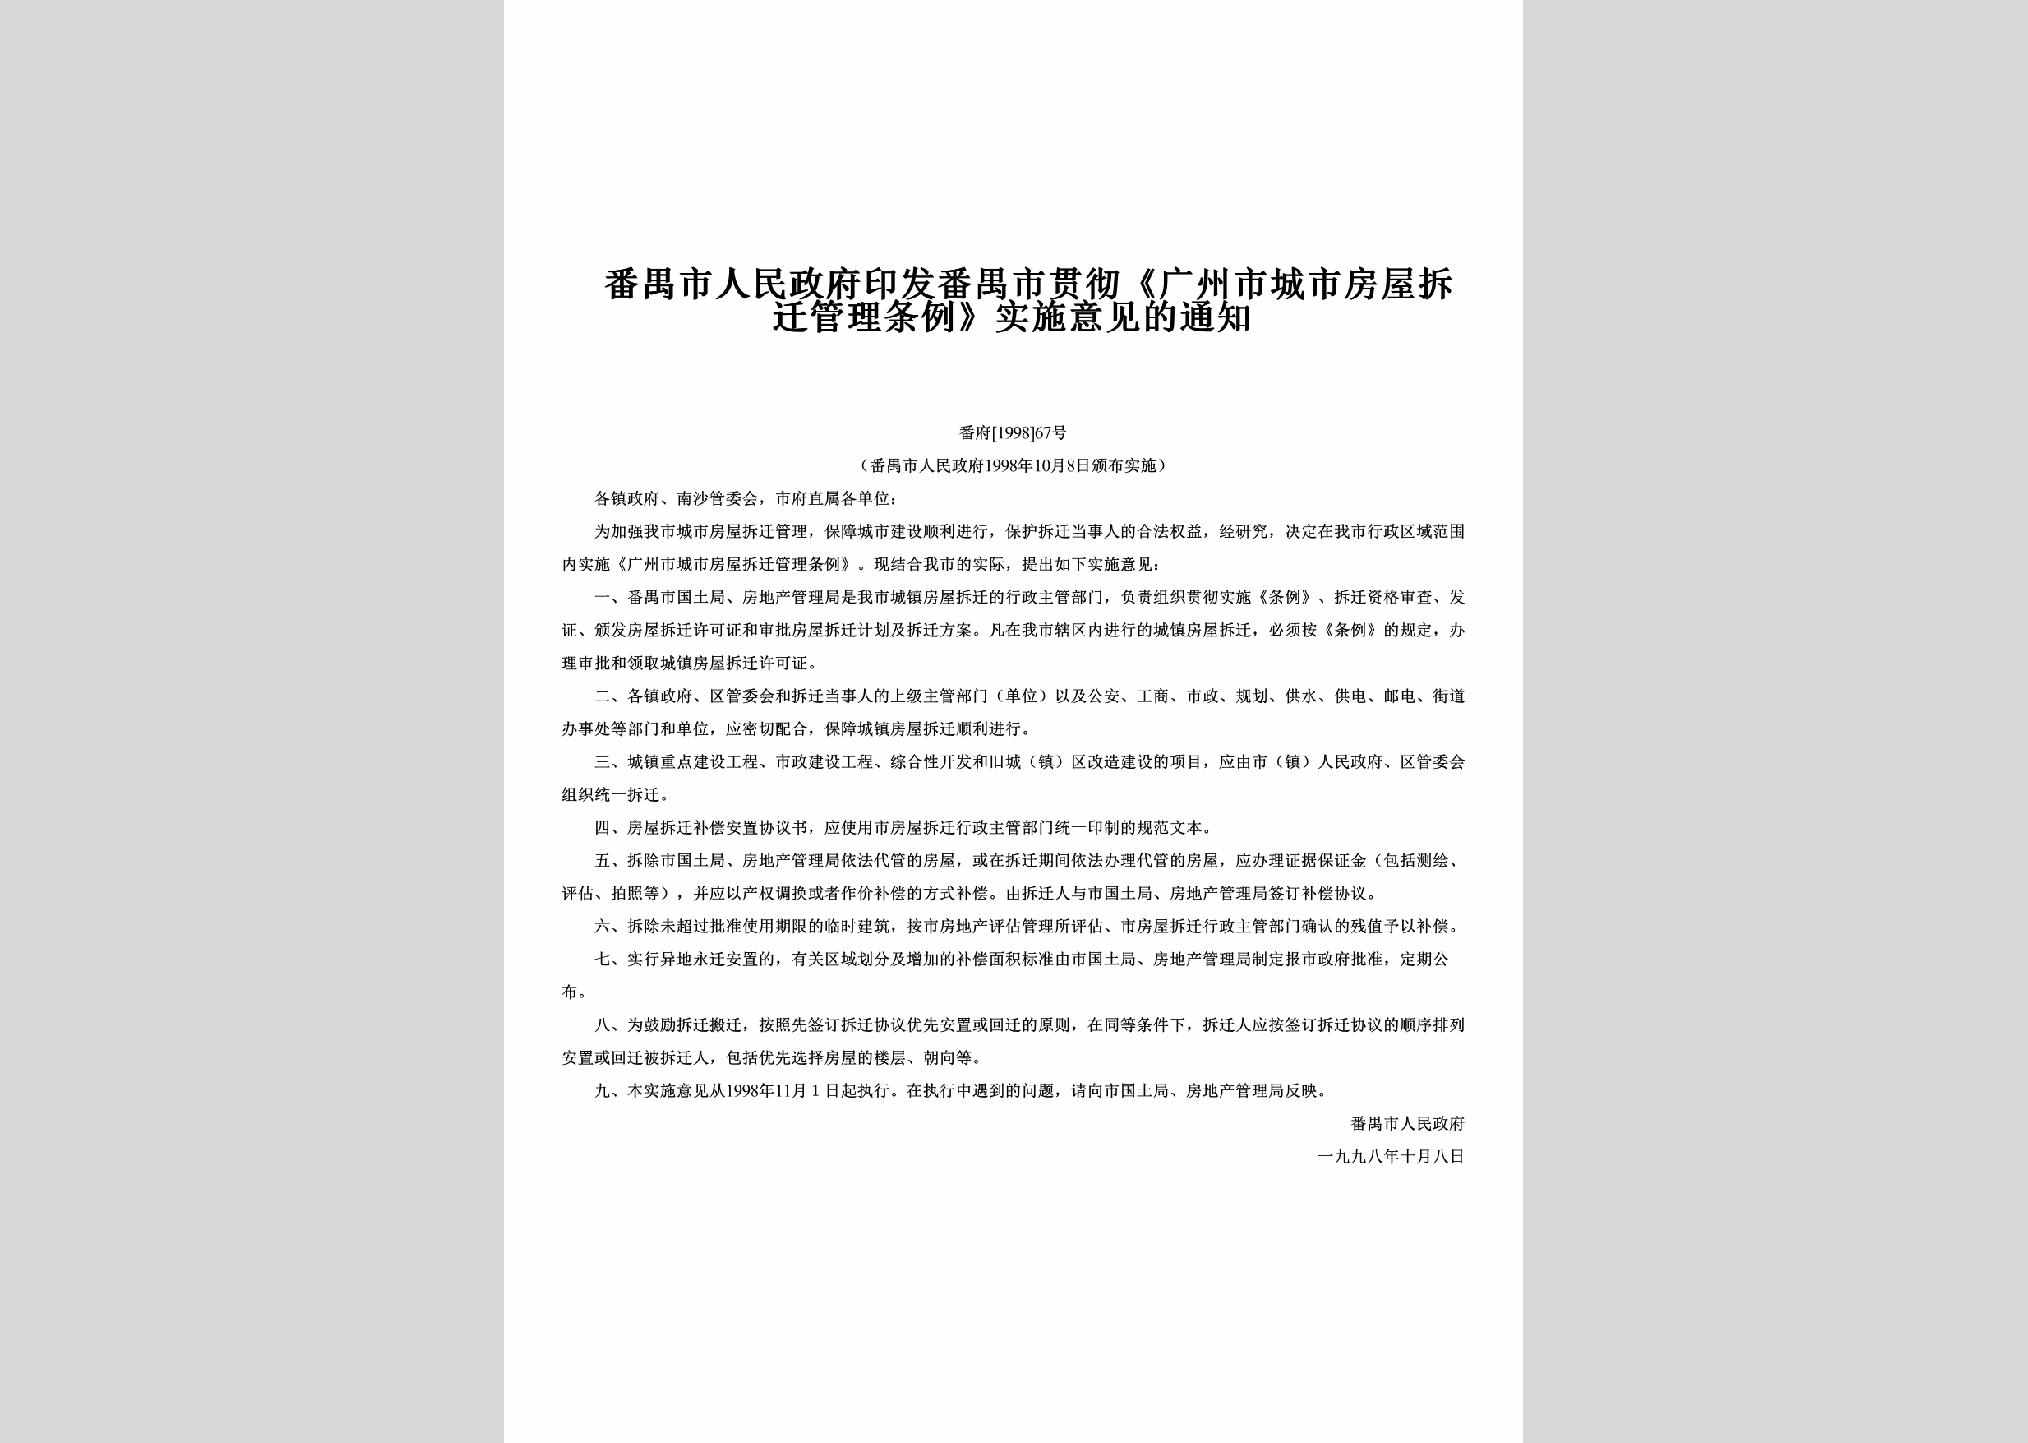 番府[1998]67号：印发番禺市贯彻《广州市城市房屋拆迁管理条例》实施意见的通知